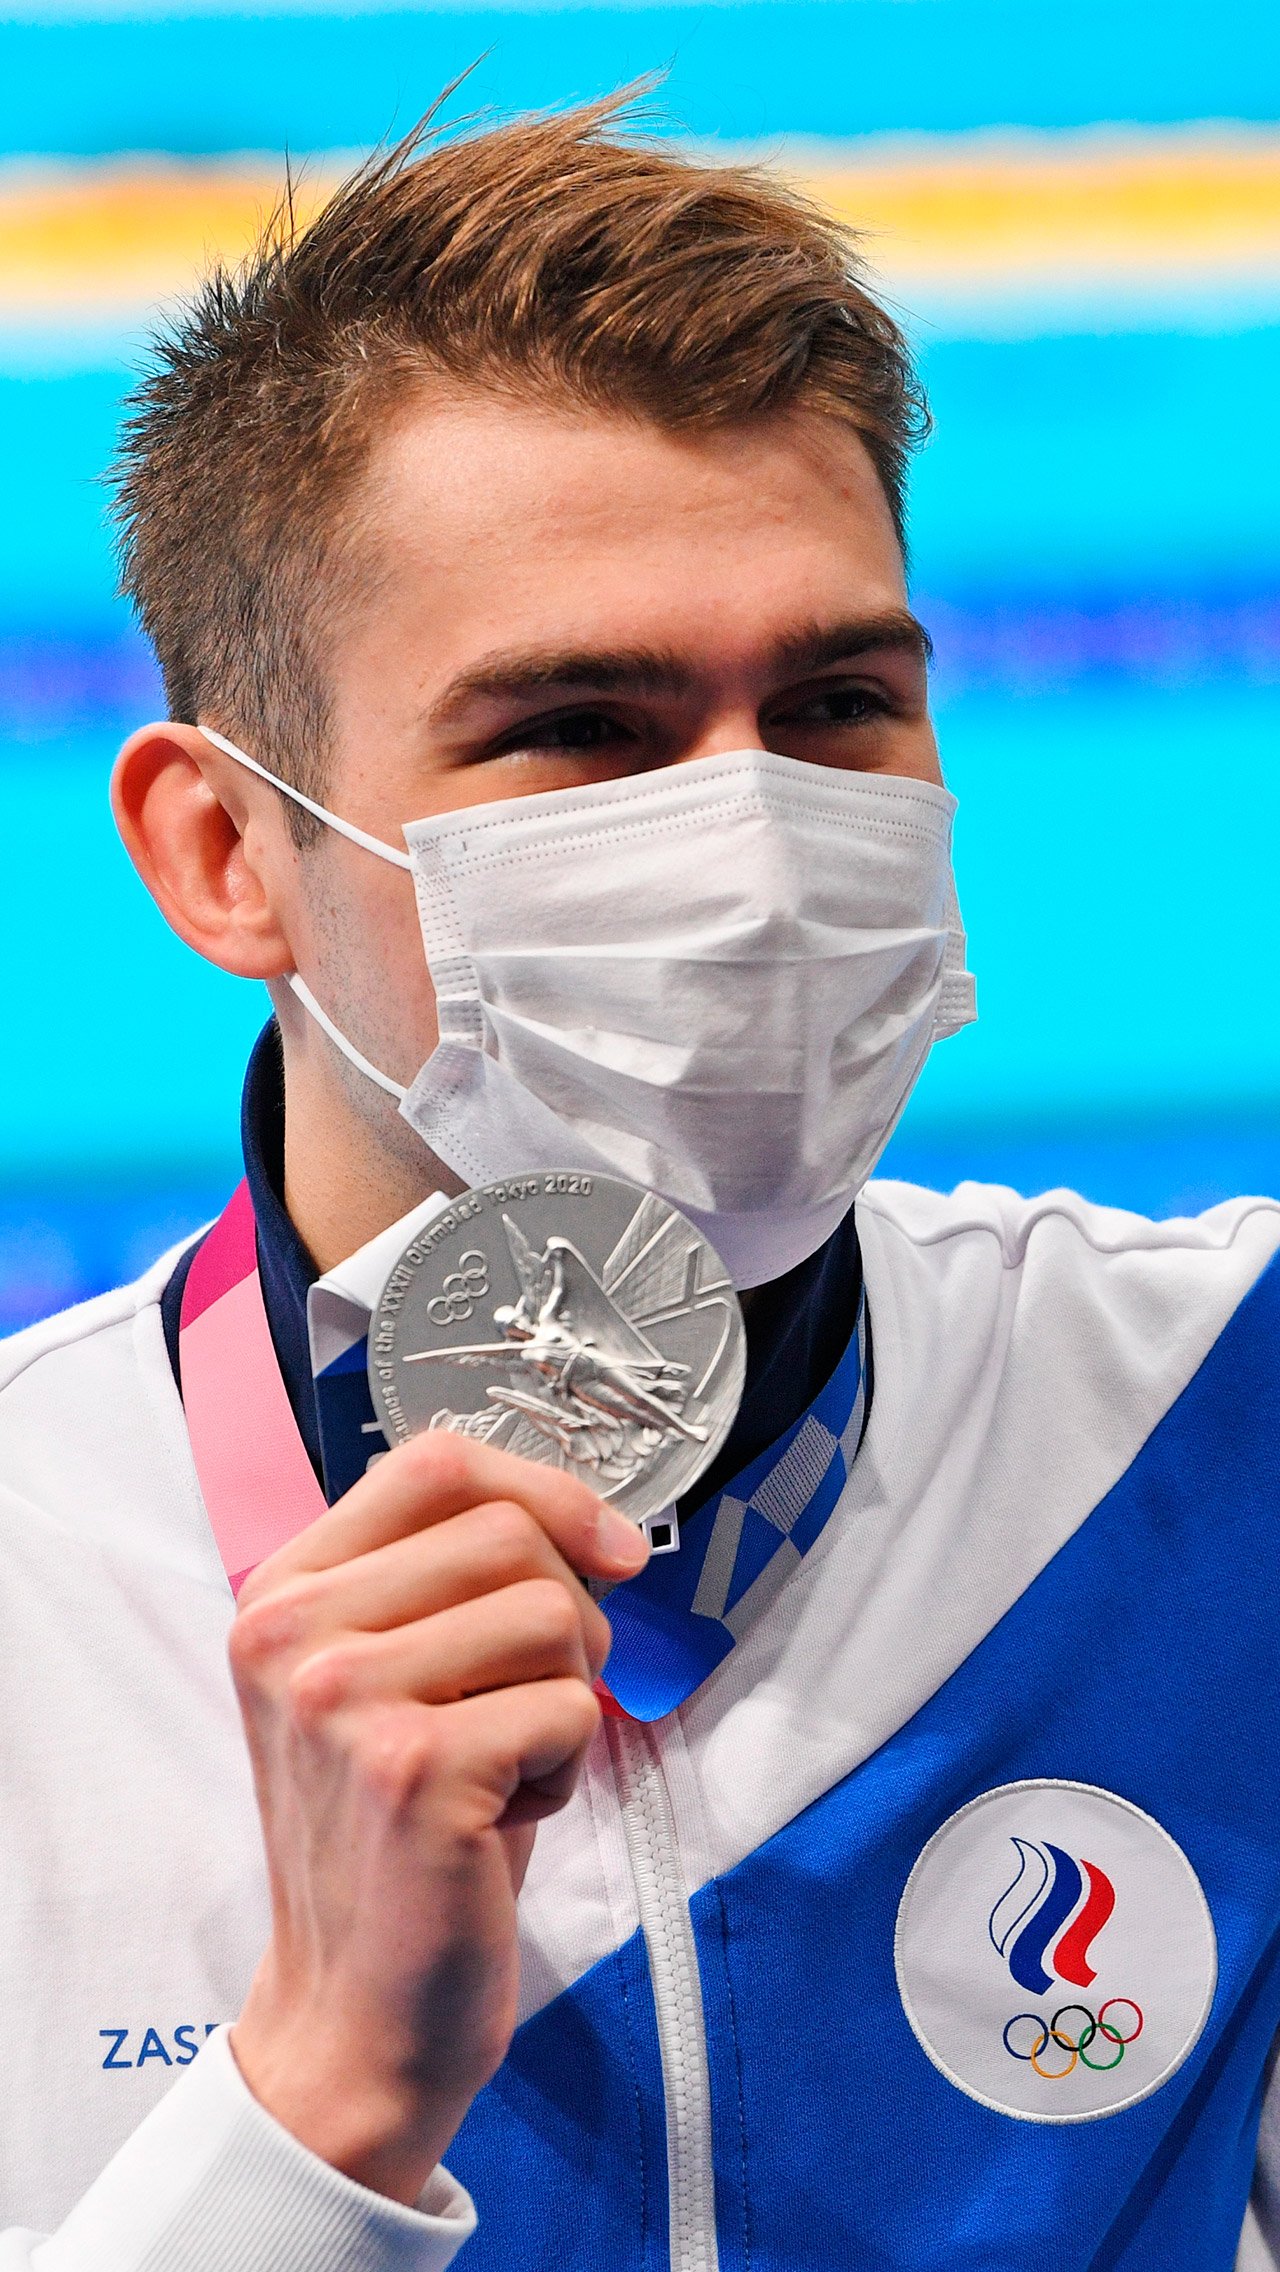 Пловец Климент Колесников, выигравший серебро и бронзу, обеспечил себе в первую неделю Олимпиады 4,2 млн рублей. Сумма без вычета налогов, разумеется.